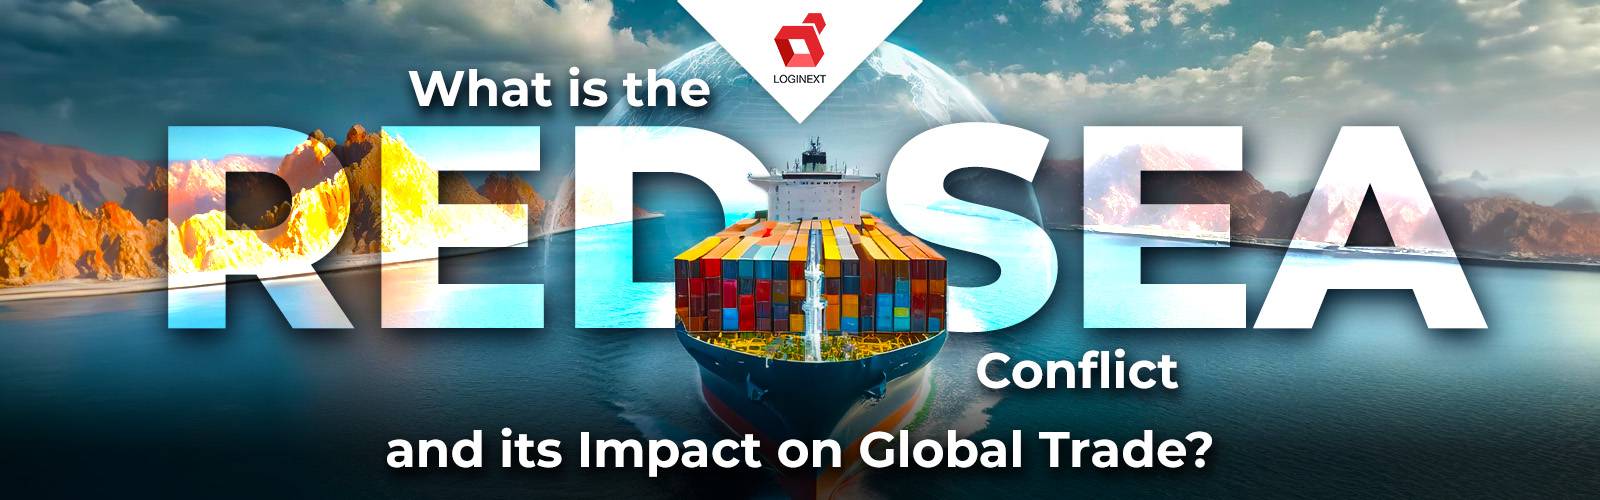 ما هو صراع البحر الأحمر وتأثيره على التجارة العالمية؟